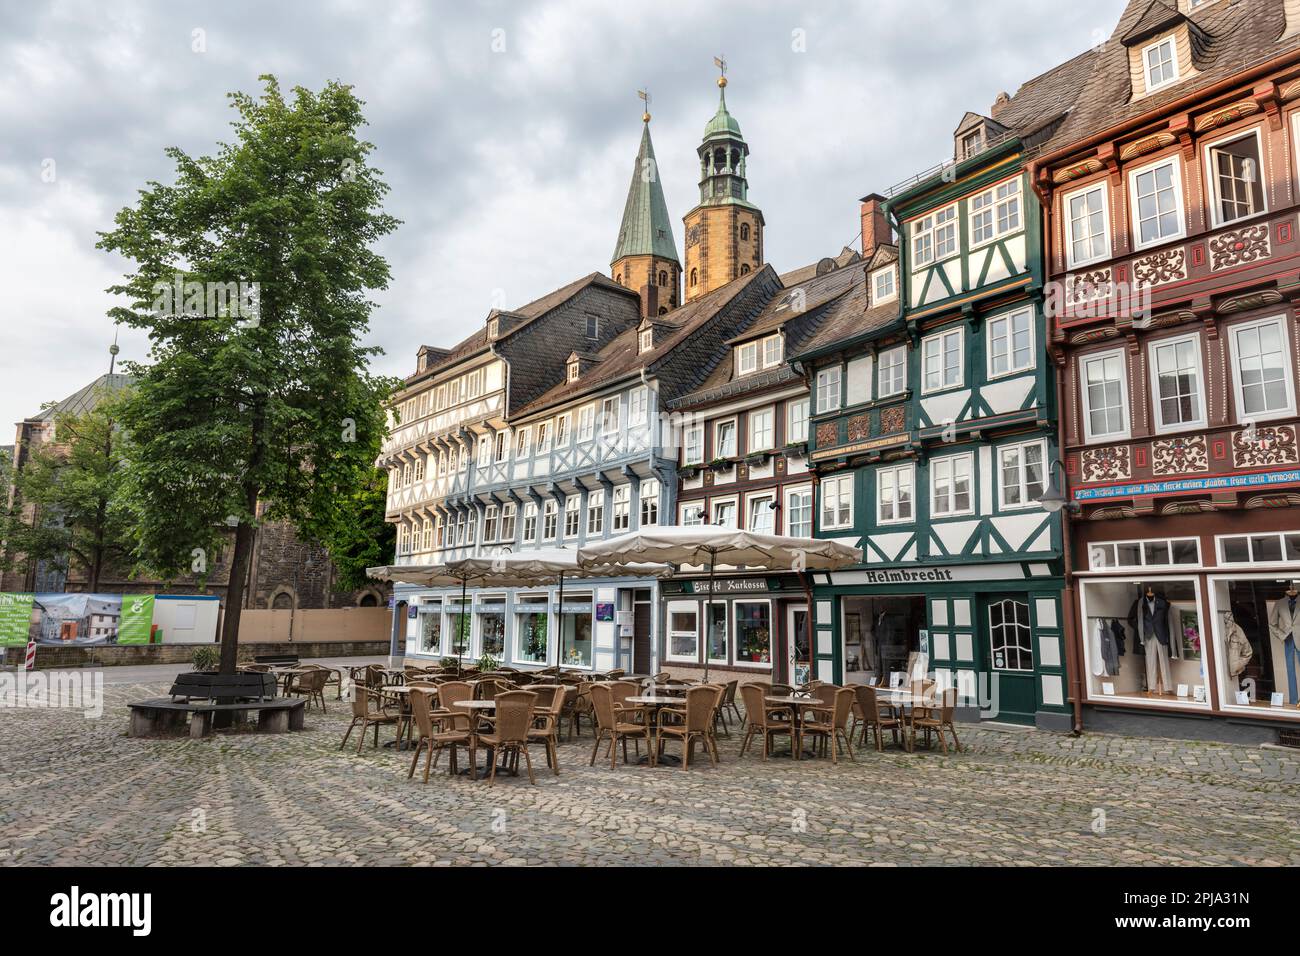 Edifici medievali in legno con negozi e caffè a Schuhhof, una piccola piazza nel centro storico di Goslar, patrimonio dell'umanità dell'UNESCO. Foto Stock